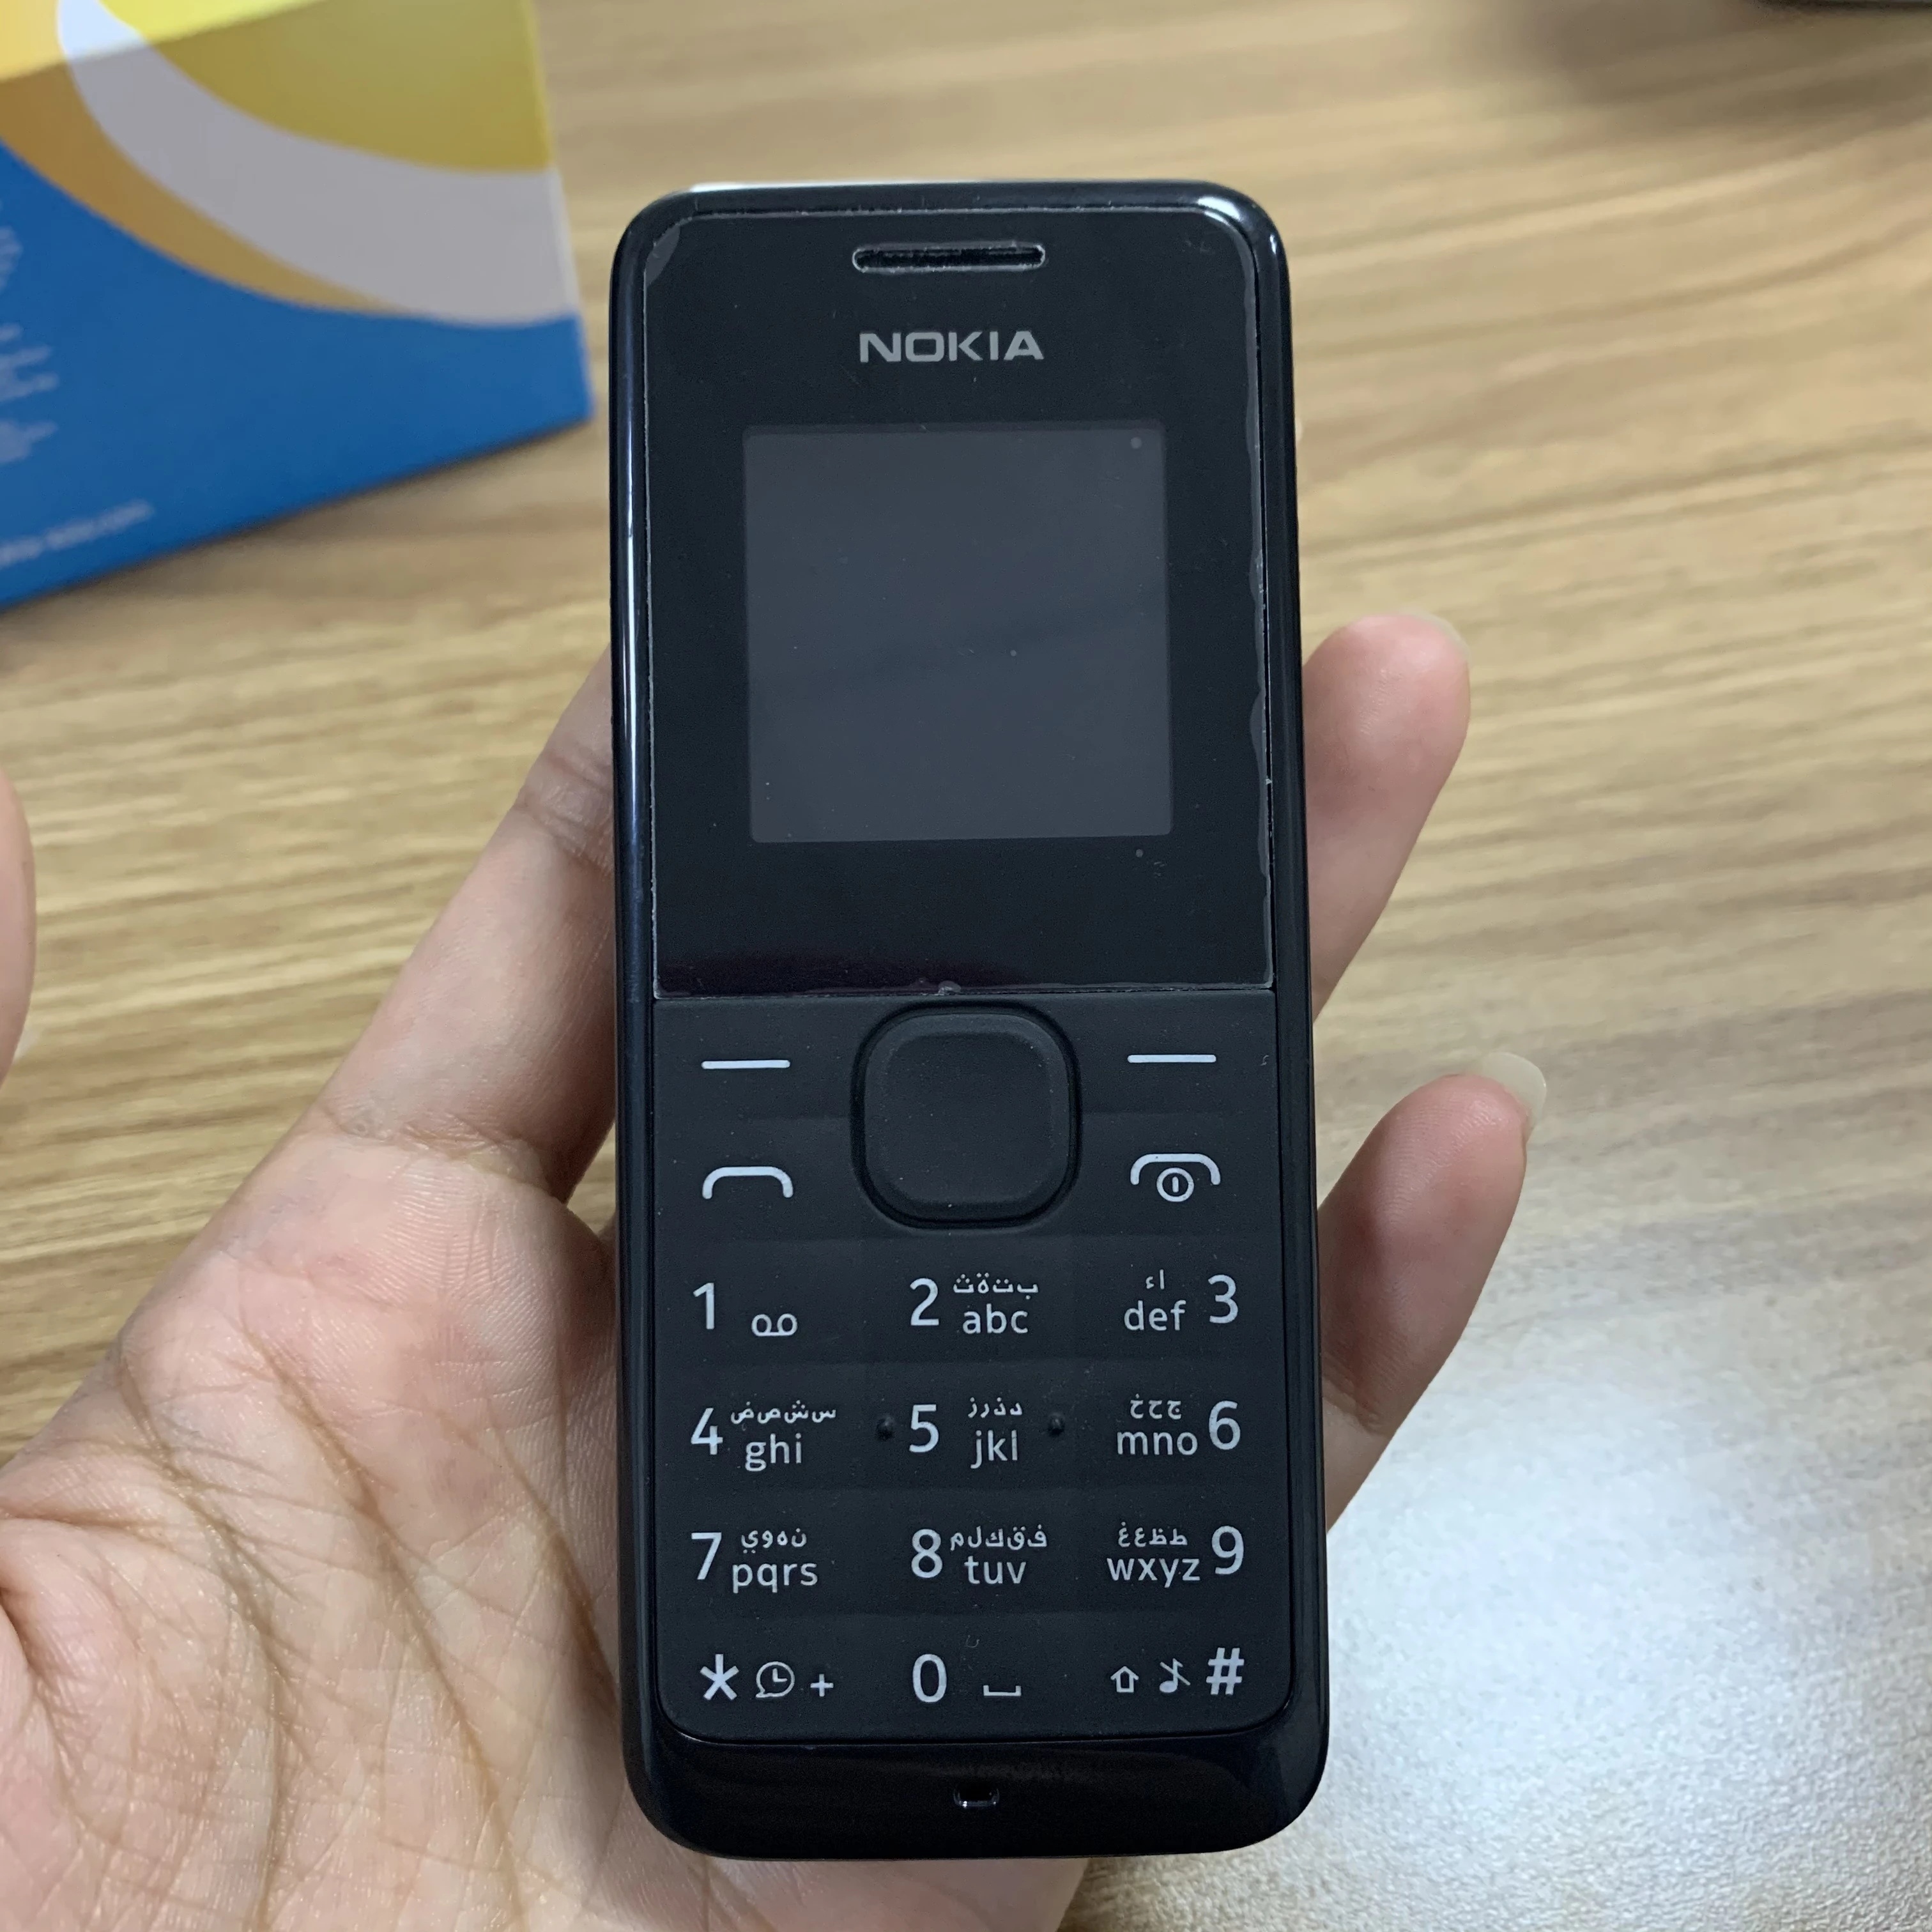 Мобильный телефон Nokia 105 1050 (2013), Восстановленный, оригинальный, разблокированный, FM-радио, одна SIM-карта, бесплатная доставка от AliExpress WW